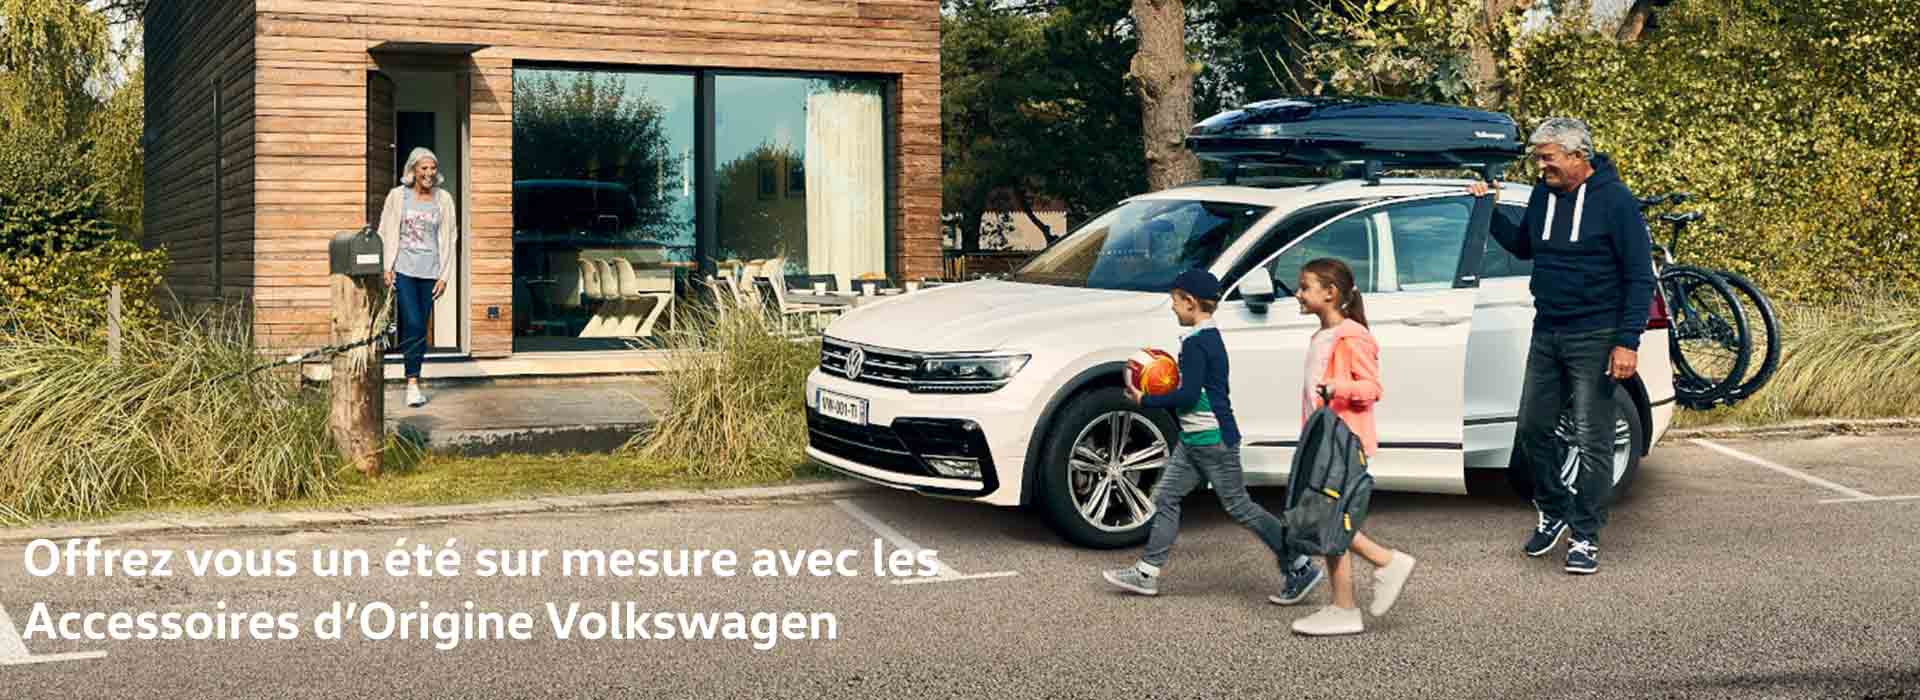 Offre accessoires été 2021 - Volkswagen Laval - Véhicules neufs et  occasions en Mayenne